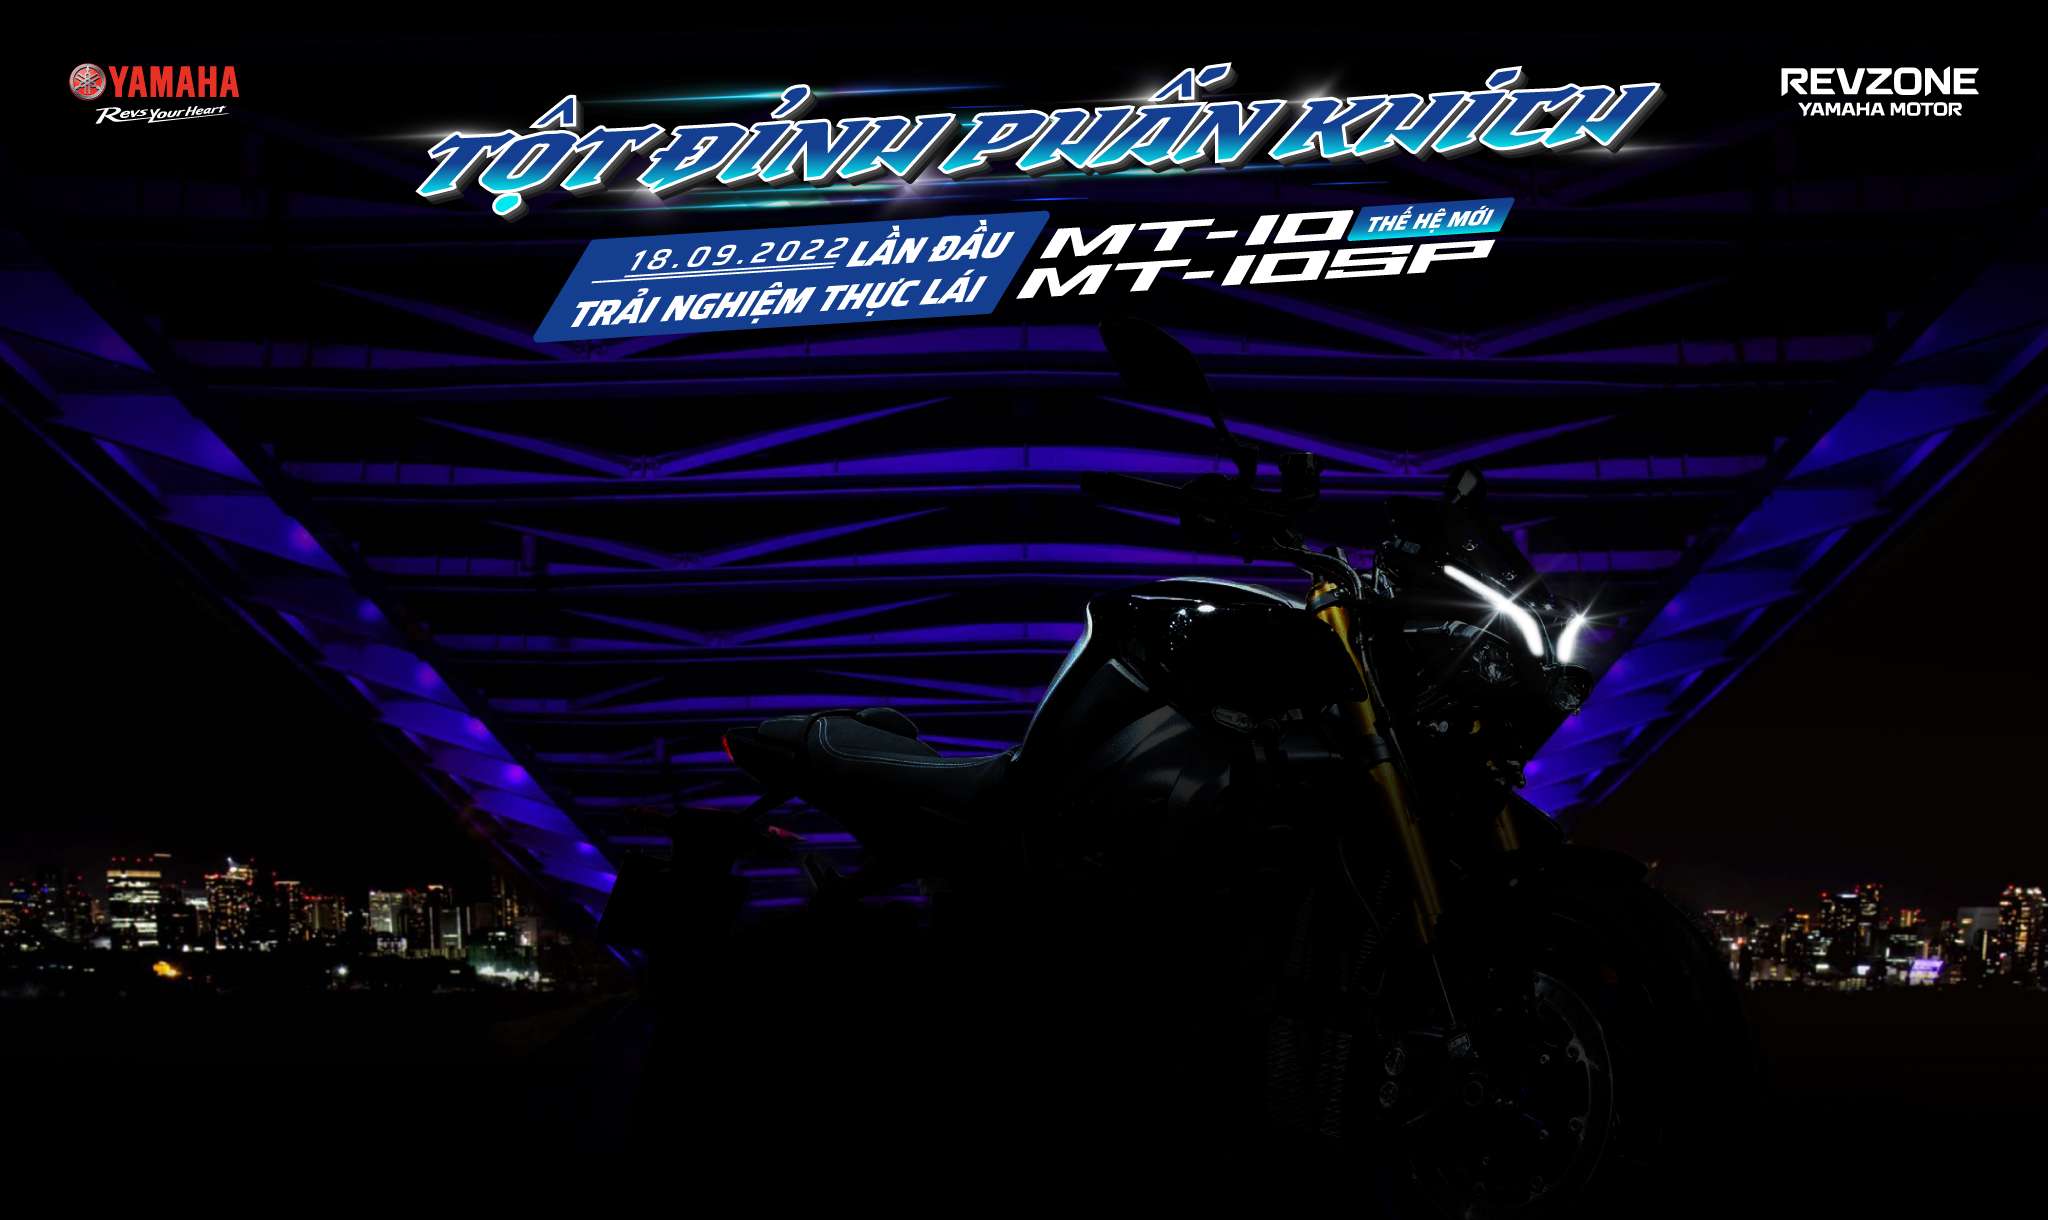 Hôm nay, Yamaha sẽ giới thiệu MT-10 phiên bản hoàn toàn mới tại Việt Nam